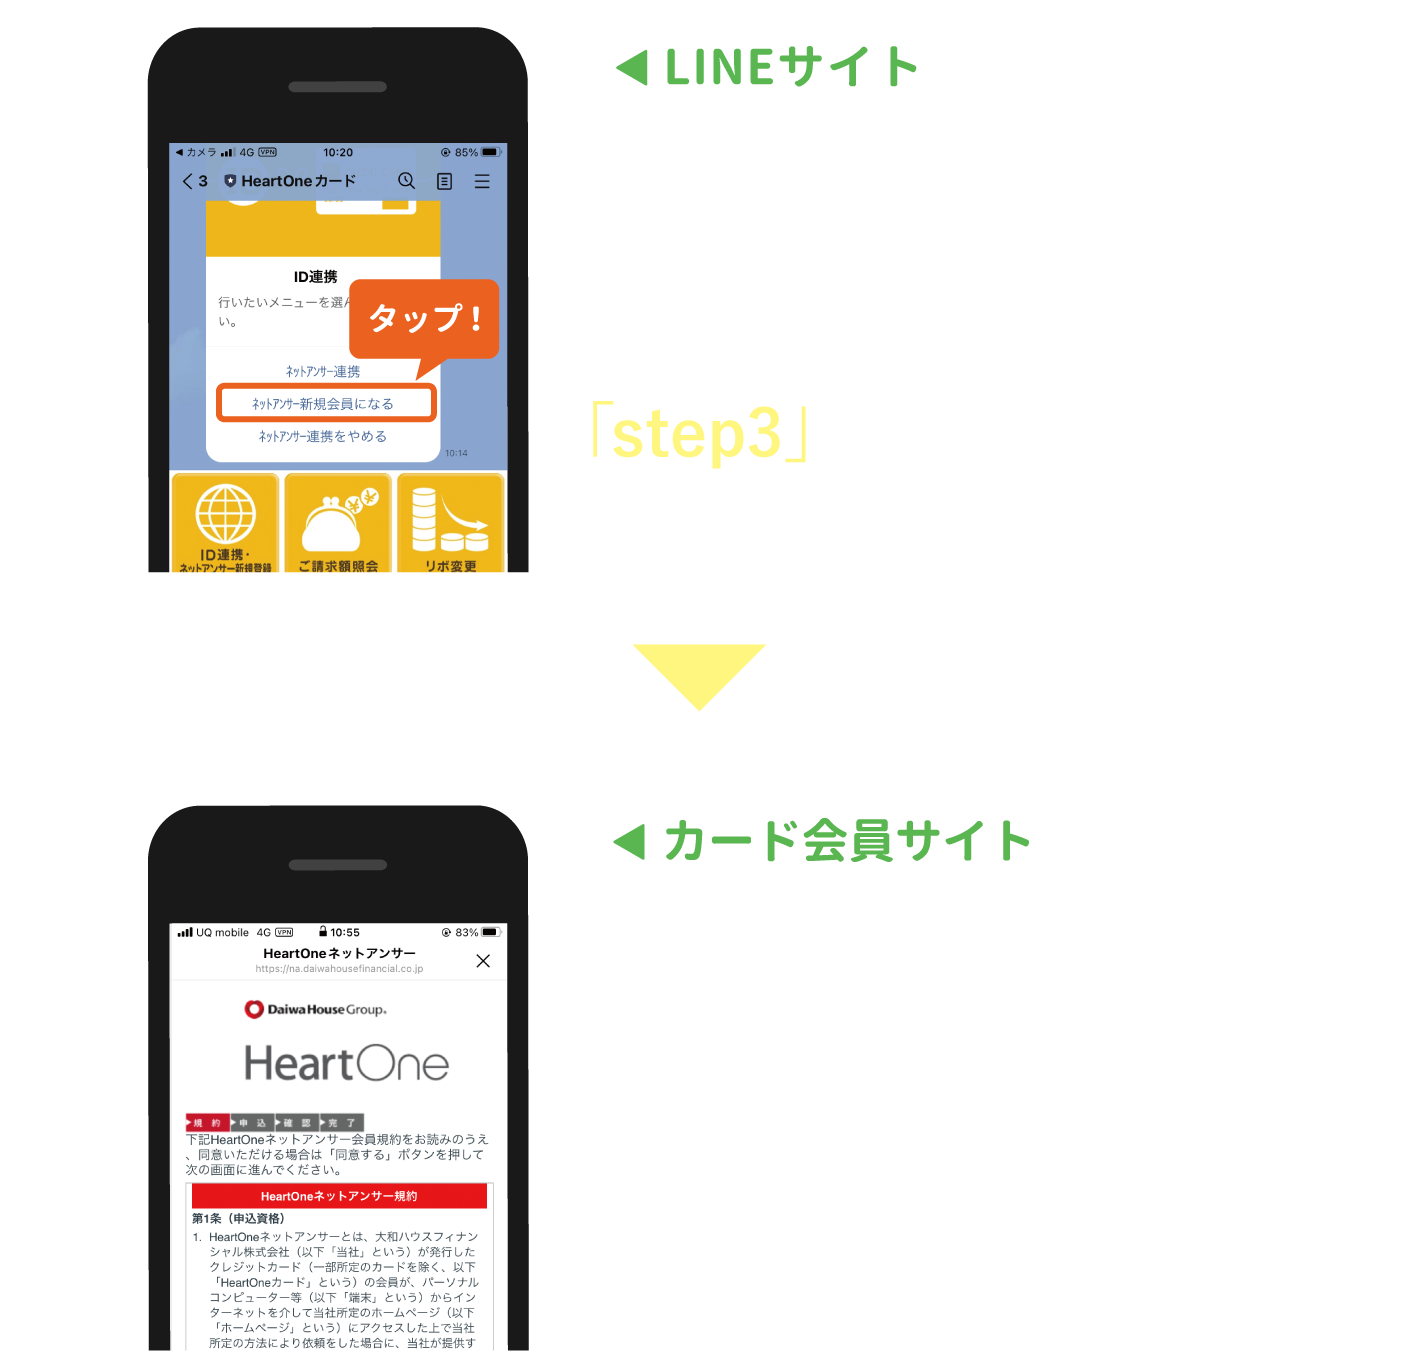 HeartOneネットアンサーに登録済みの方は、「step3」へお進みください。HeartOneネットアンサーにジャンプします。手順に沿ってご登録ください※。